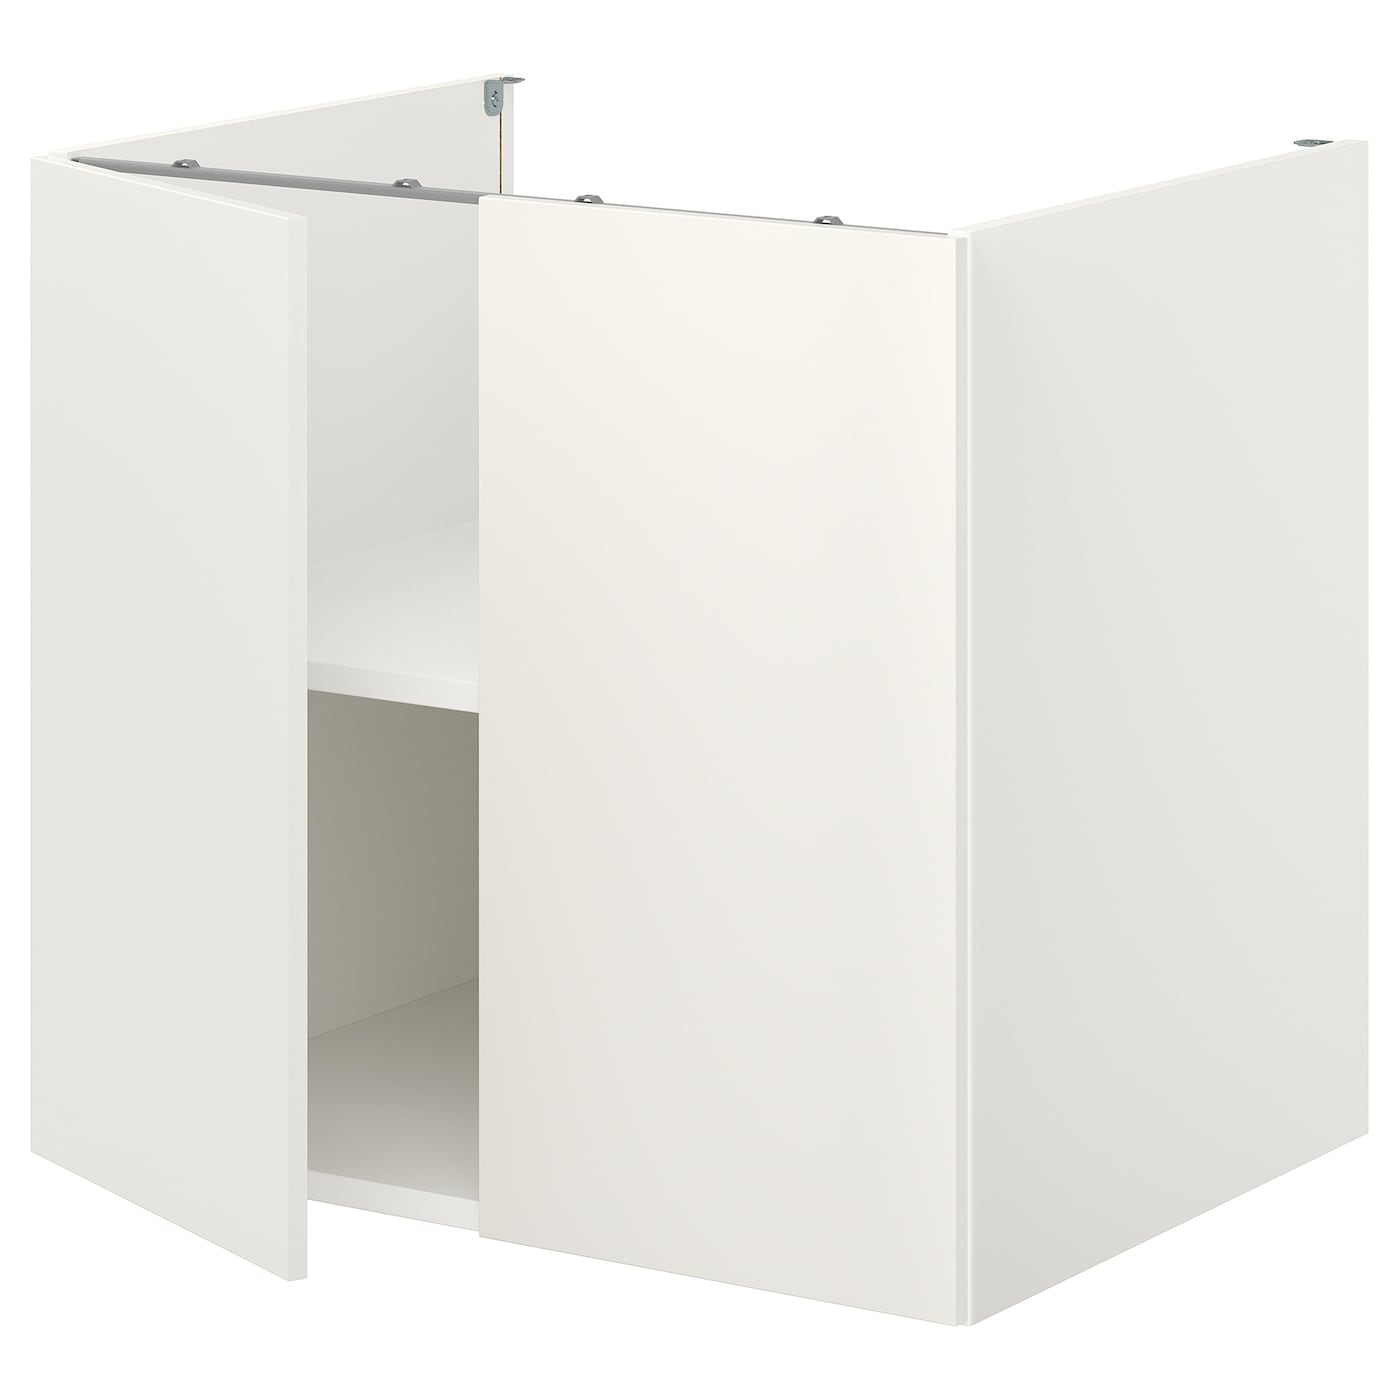 Напольный шкаф с дверцами - IKEA ENHET, 75x62x80см, белый, ЭХНЕТ ИКЕА